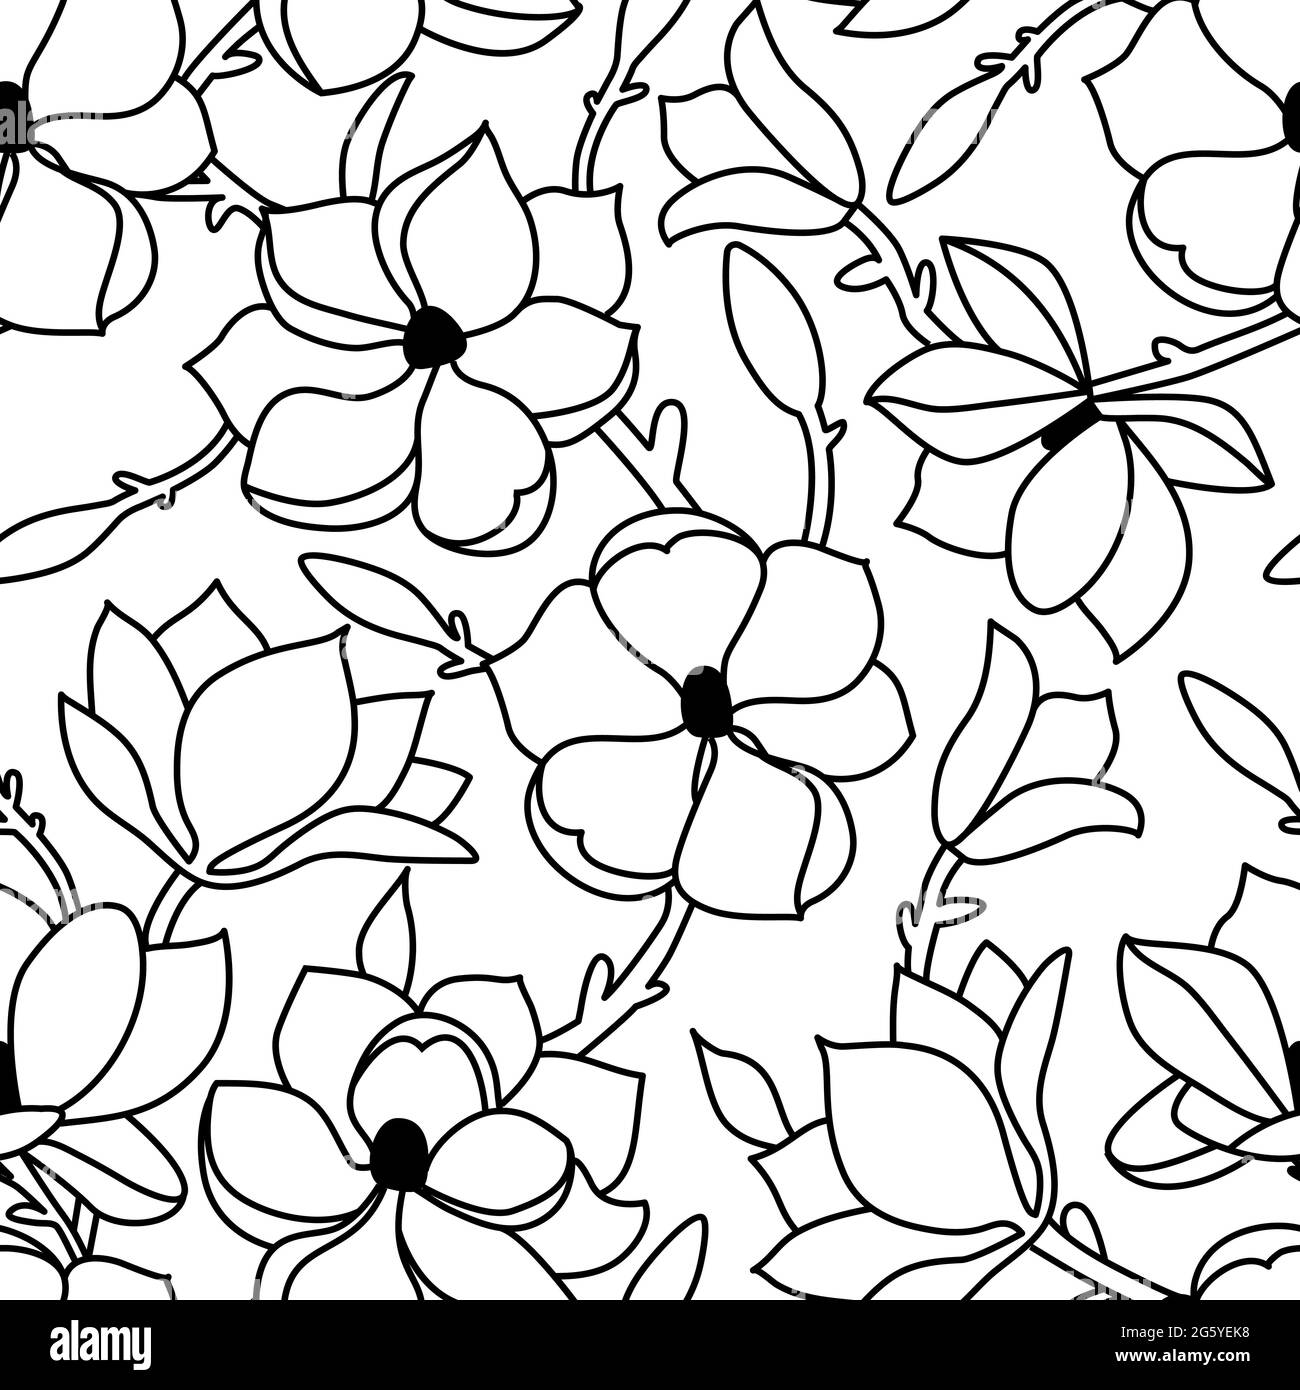 Un motivo floreale senza cuciture. Un disegno lineare a mano di fiori e una foglia di magnolia su uno sfondo bianco isolato. Illustrazione vettoriale Illustrazione Vettoriale